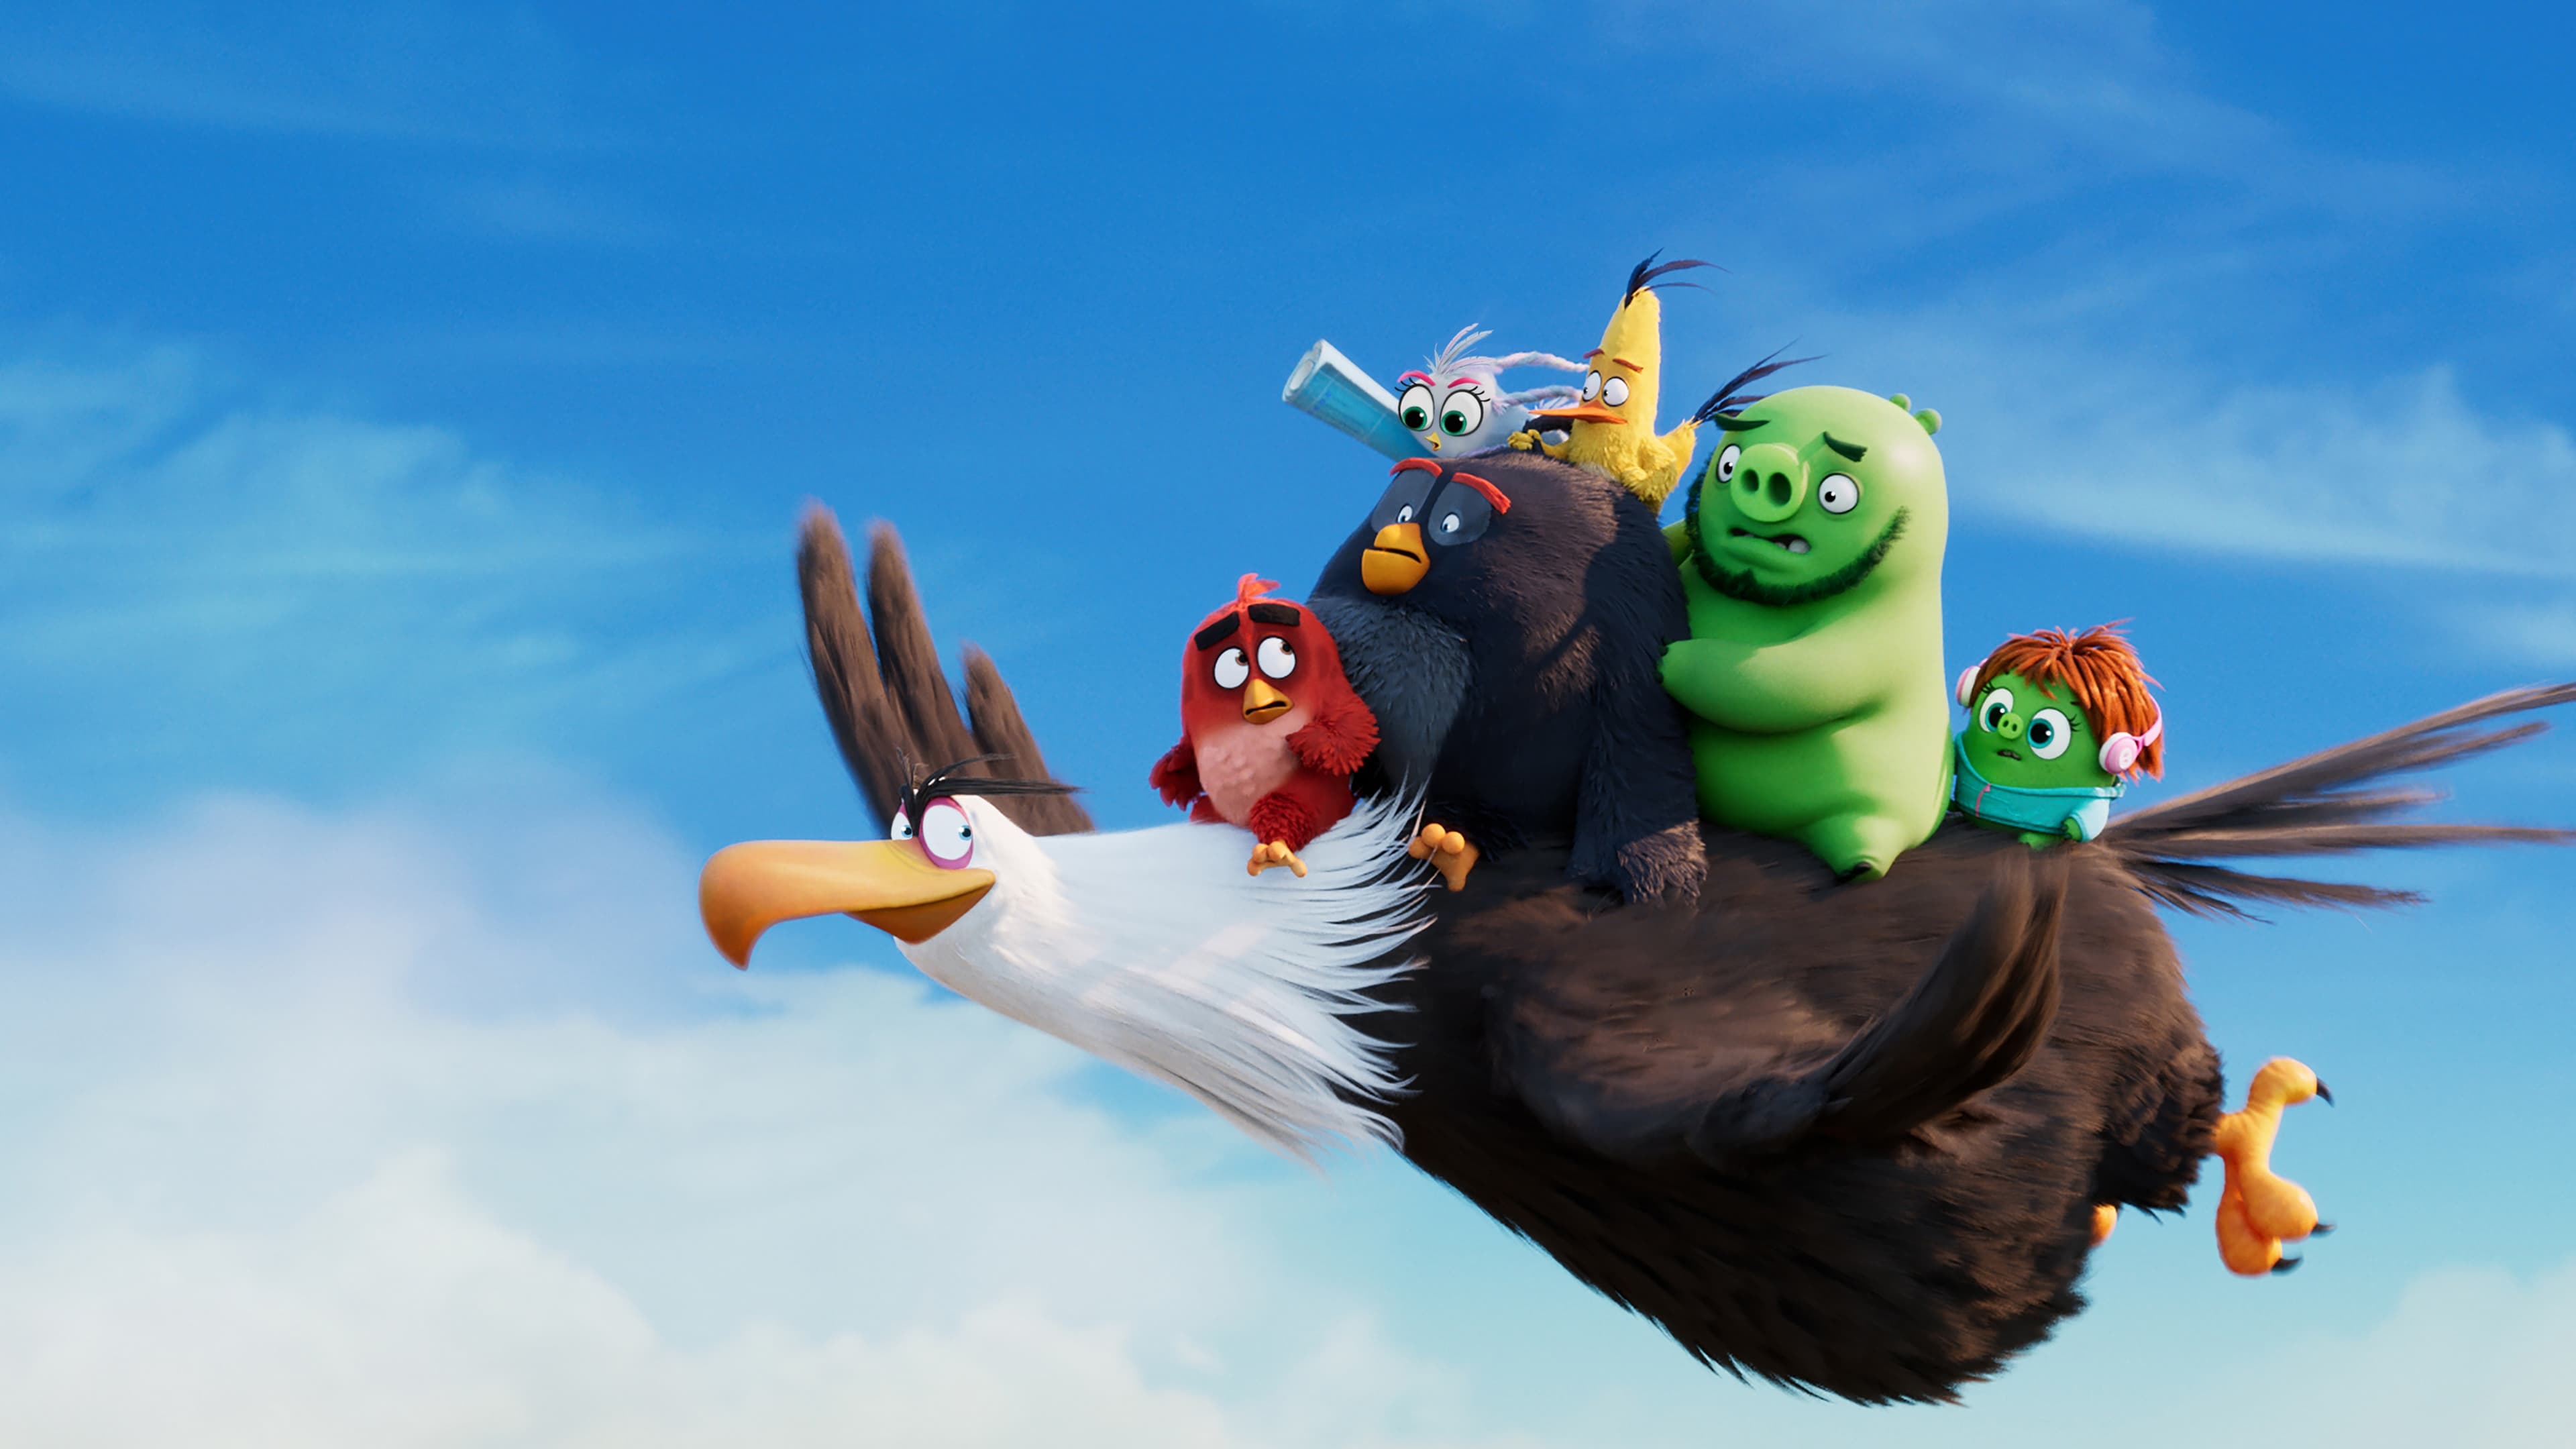 ბრაზიანი ჩიტები 2 / The Angry Birds Movie 2